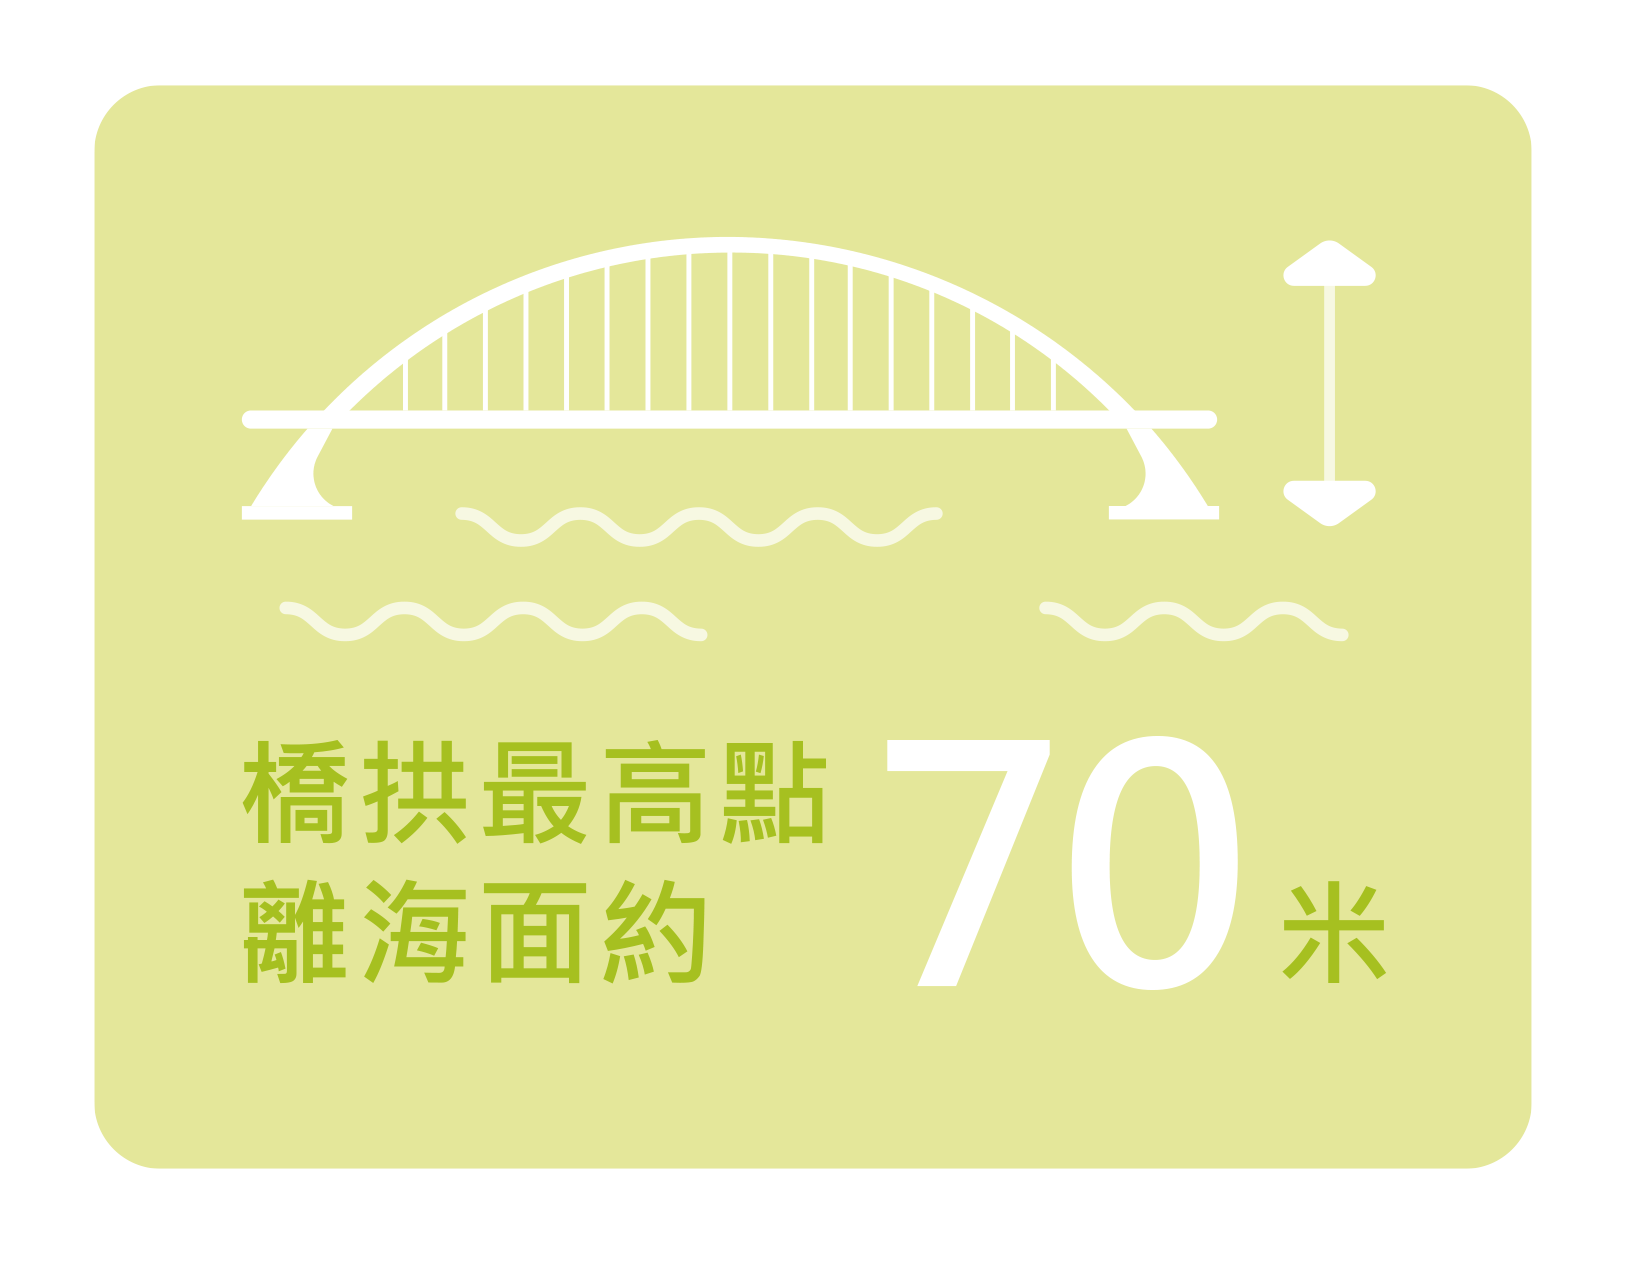 橋拱最高點離海面約70米